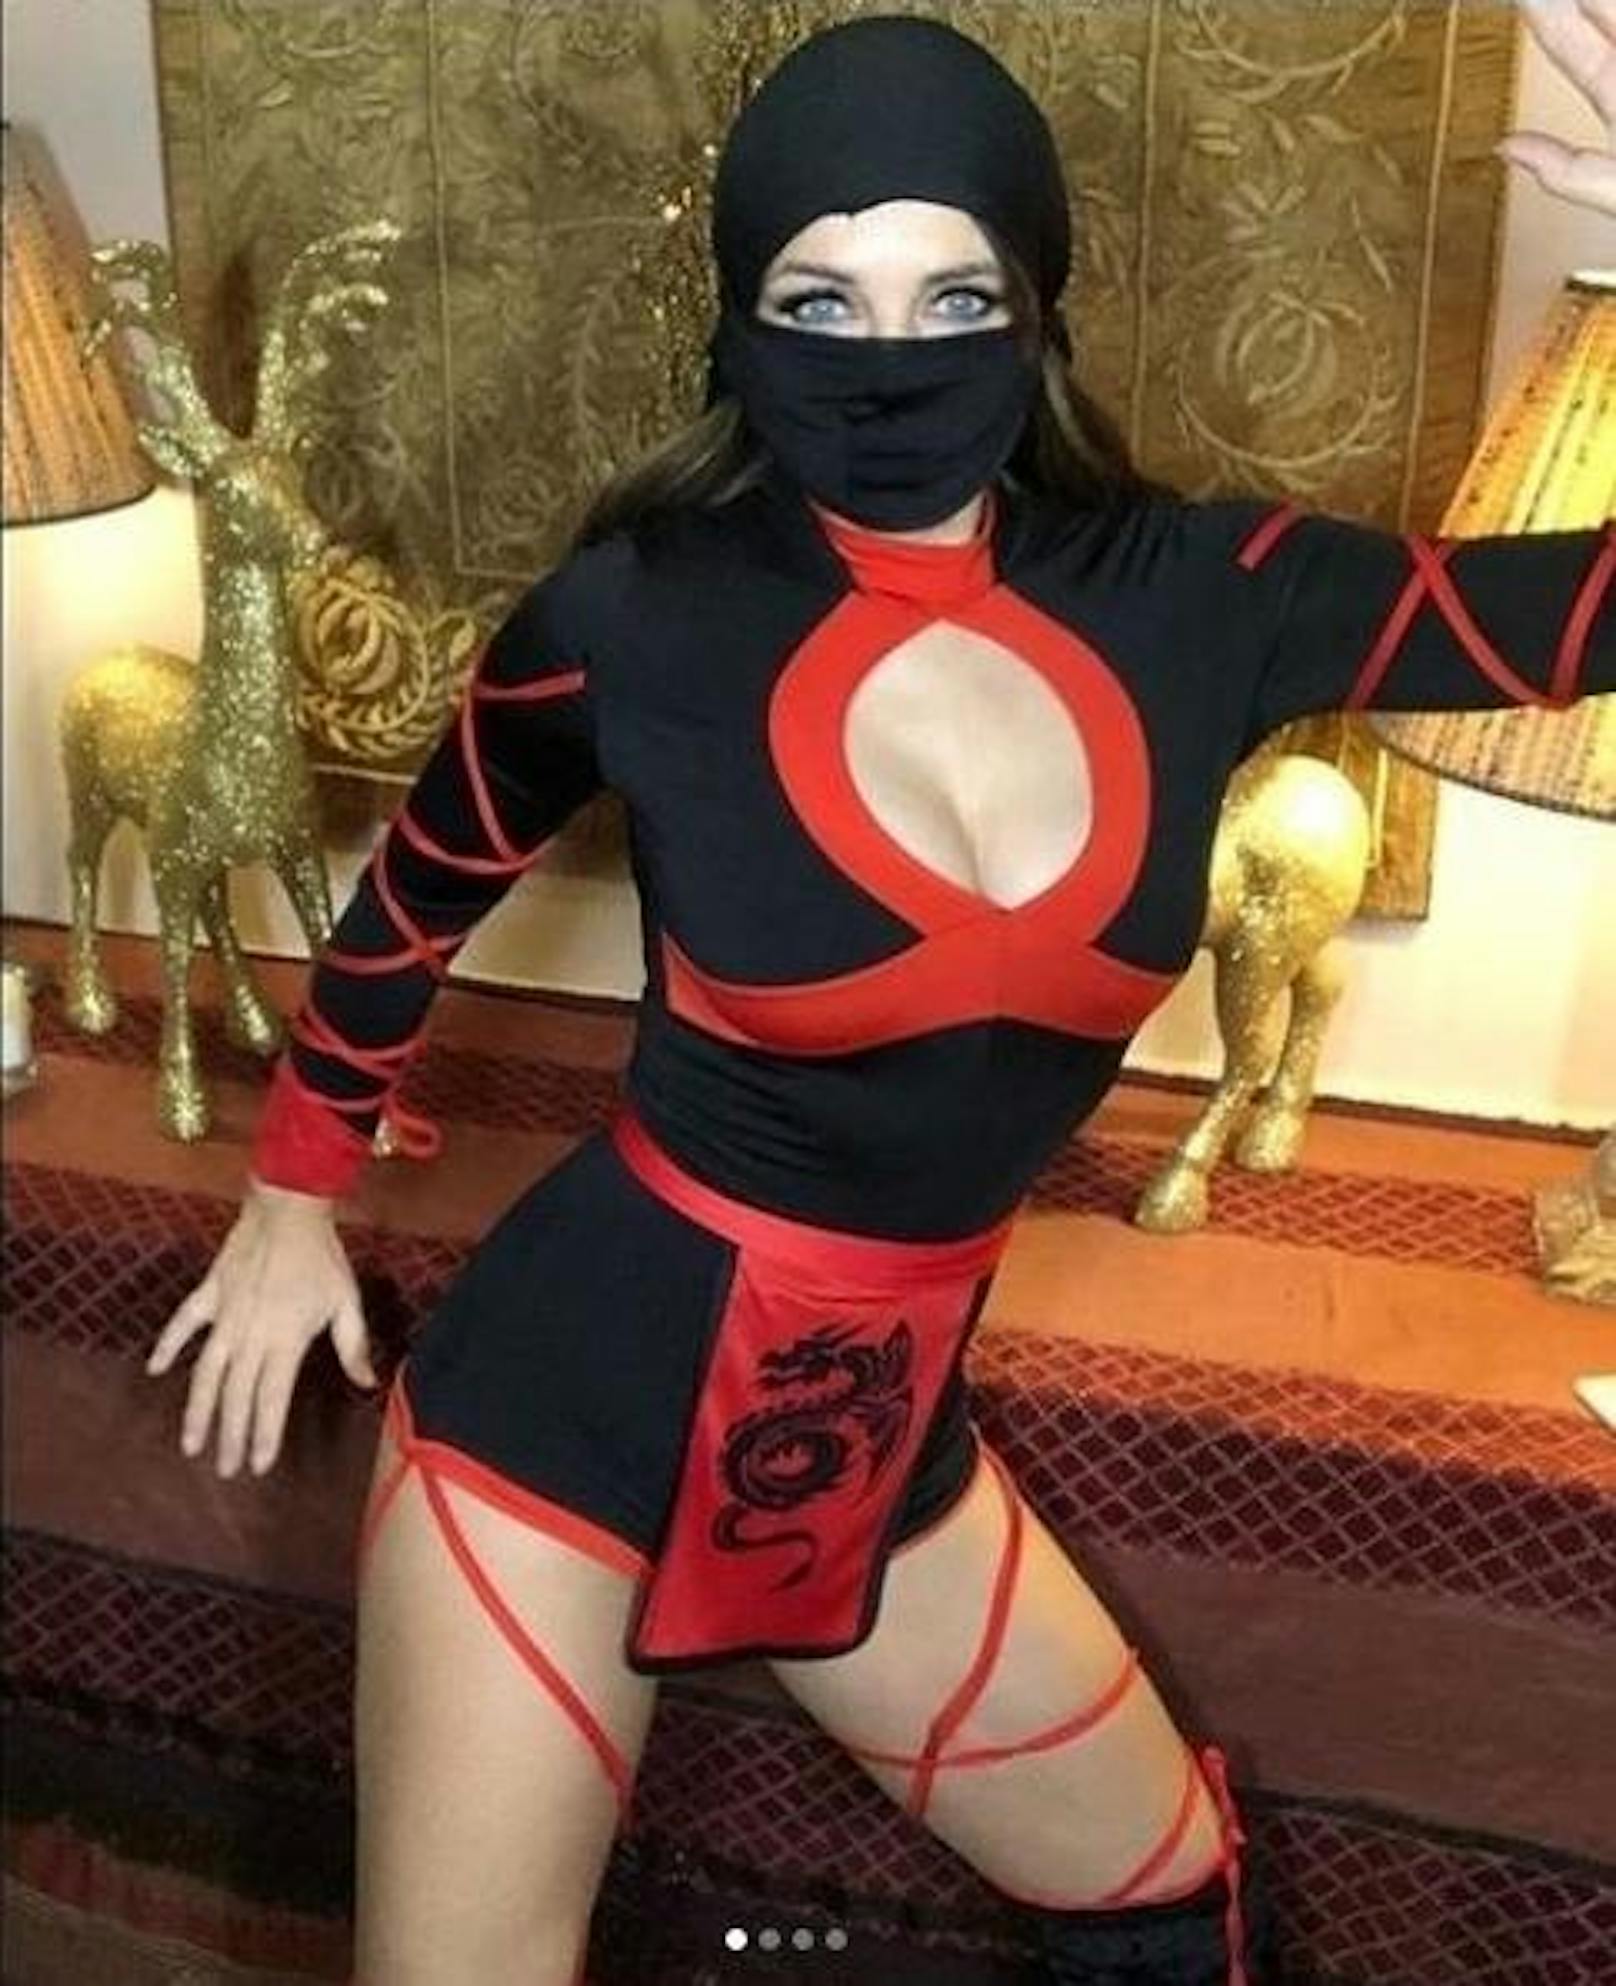 29.12.2019: Für ihre Ninja-Party hat sich Schauspielerin Elizabeth Hurley stilgerecht als mysteriöser Auftragskiller verkleidet. Natürlich musste es in ihrem Fall ein klein wenig sexier sein.